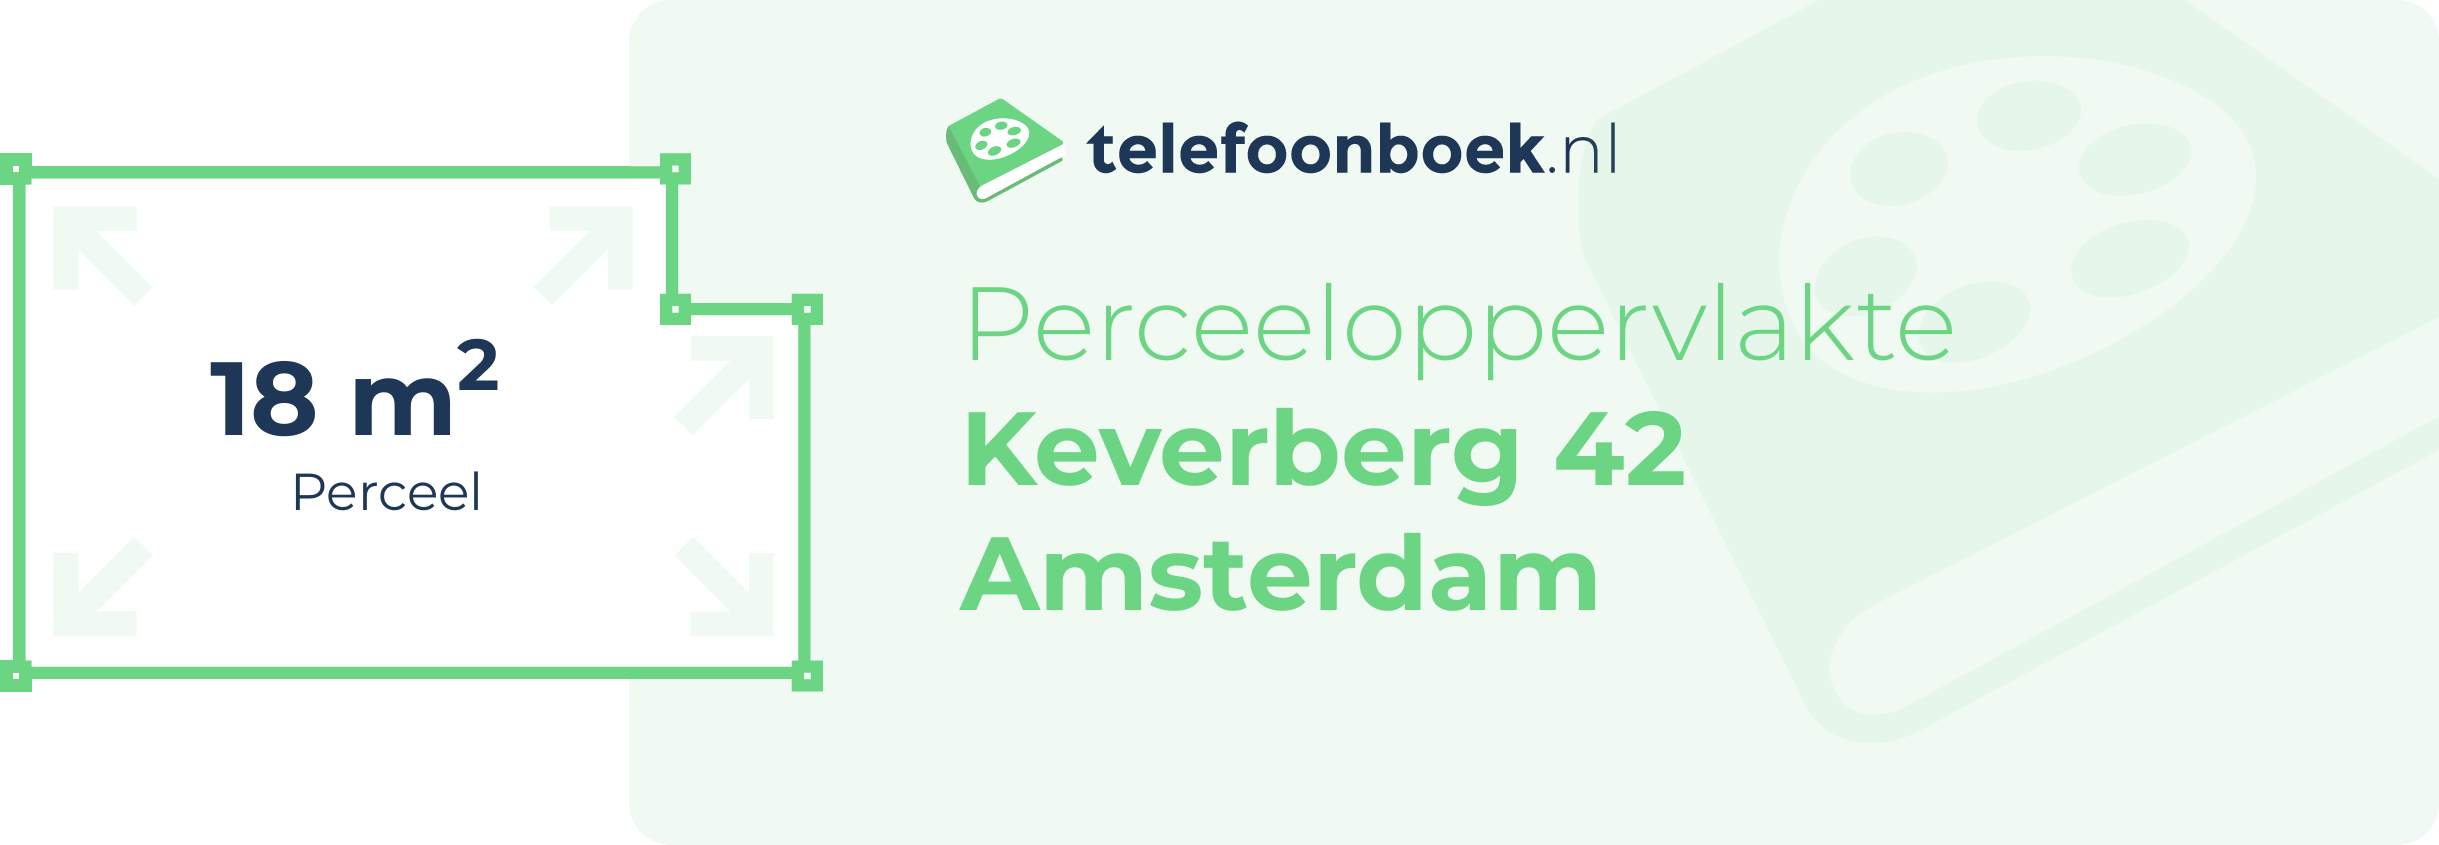 Perceeloppervlakte Keverberg 42 Amsterdam